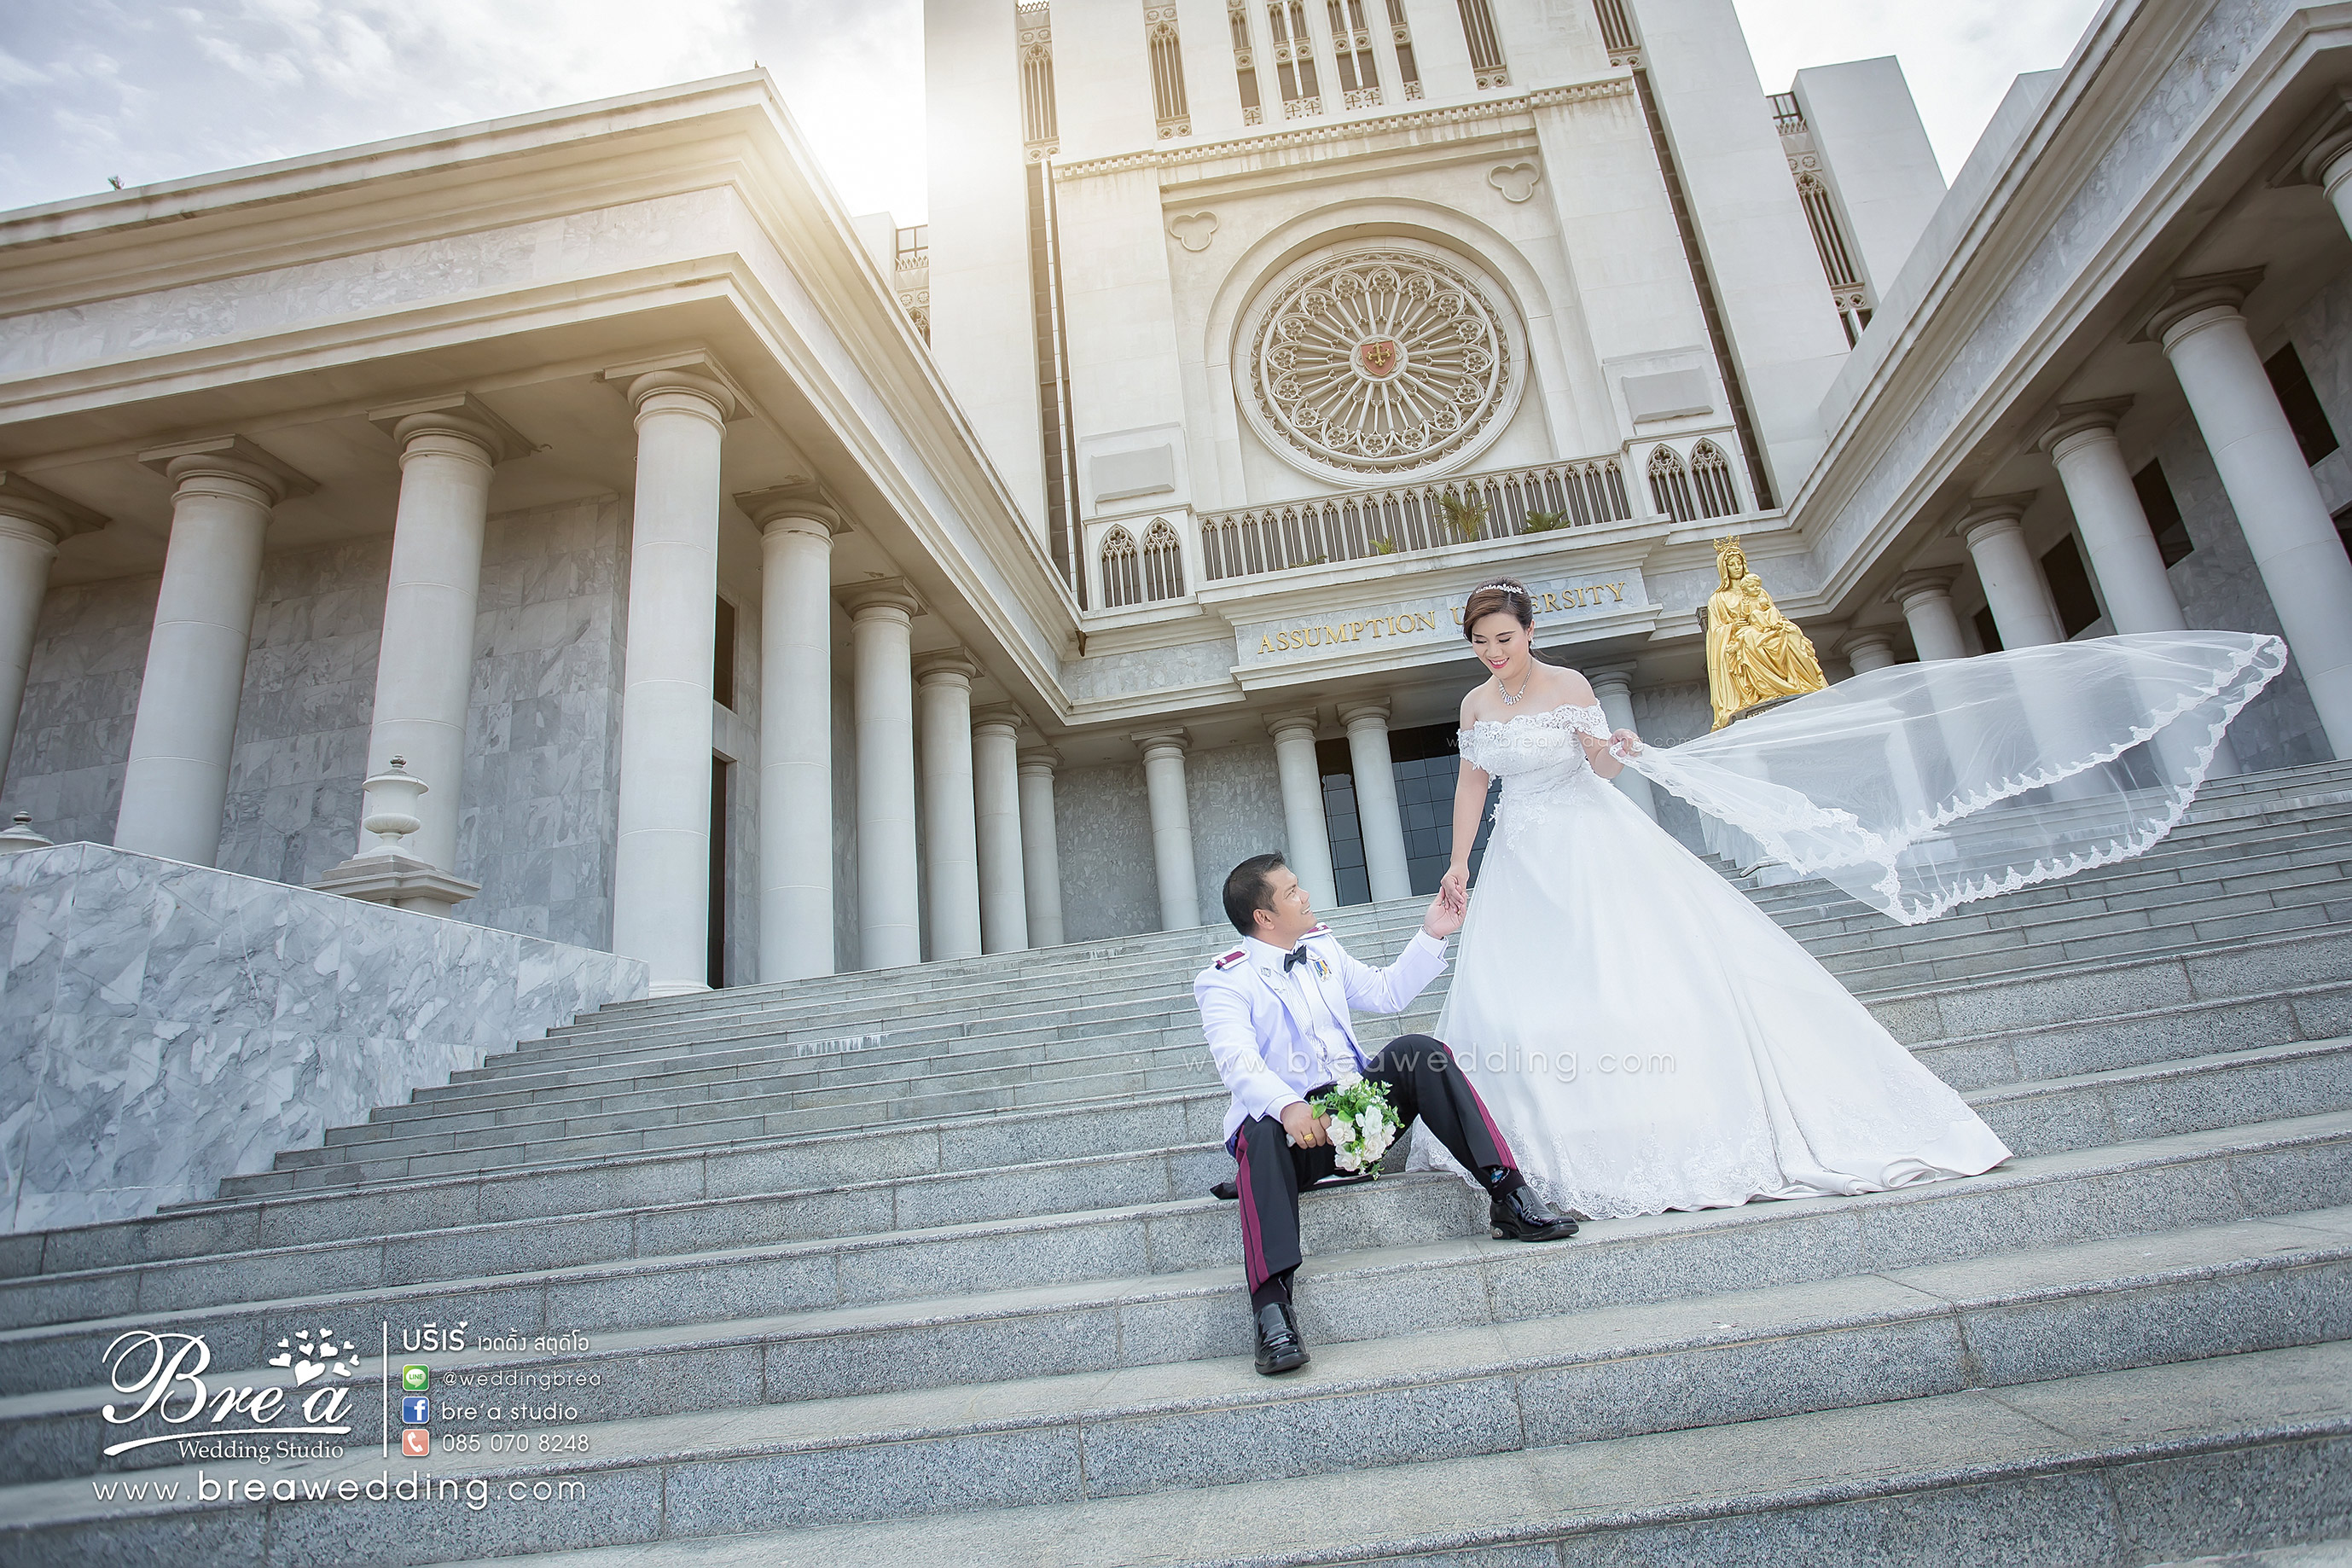 ถ่ายรูปแต่งงาน ถ่ายภาพพรีเวดดิ้ง หาช่างถ่ายรูปแต่งงาน ชุดแต่งงาน นนทบุรี